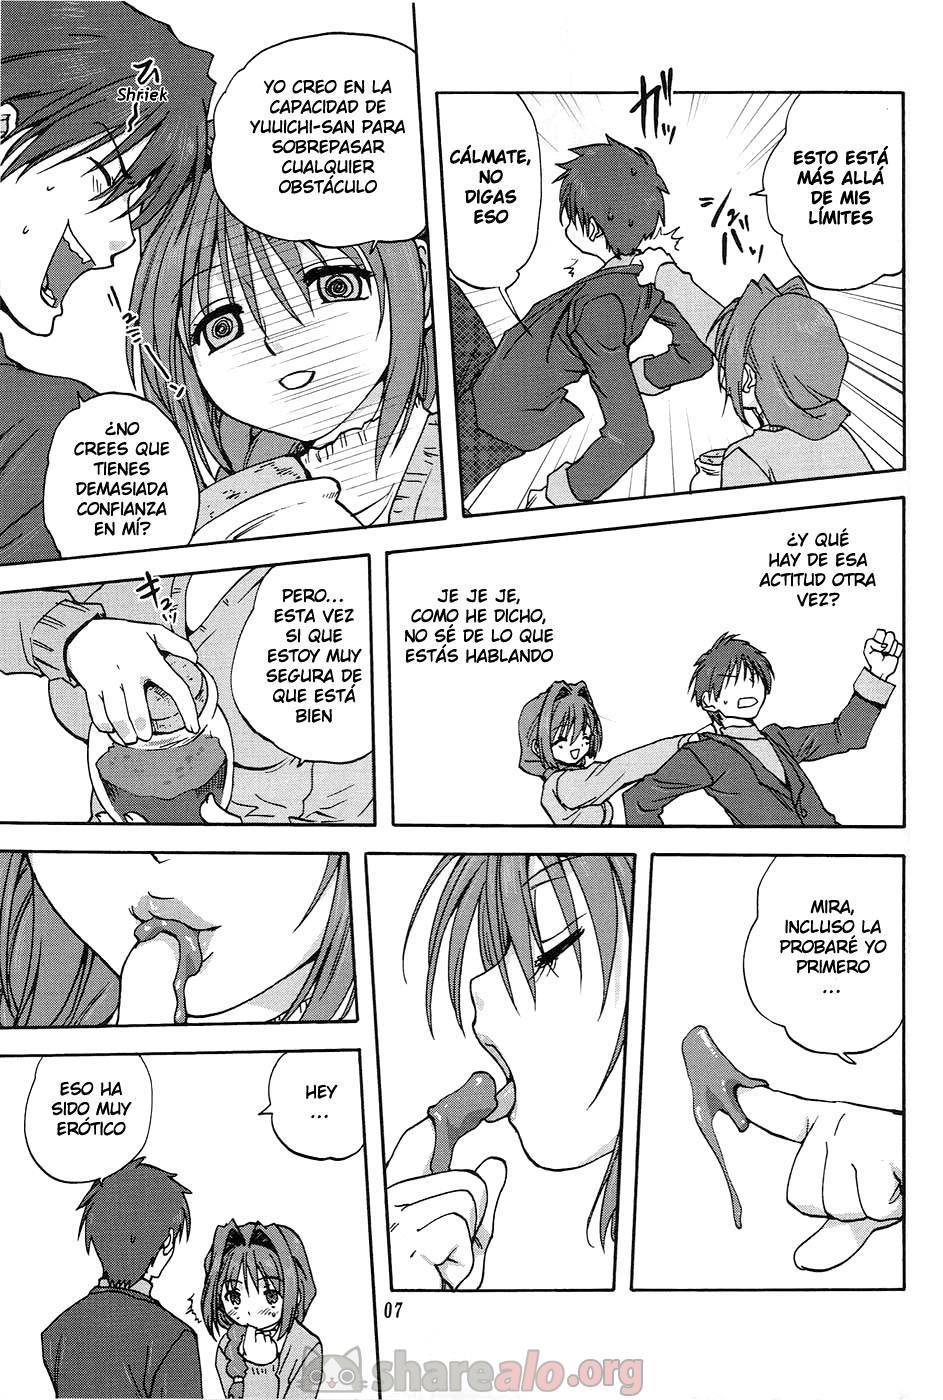 Akiko-san to Issho (Kanon XXX) - 8 - Comics Porno - Hentai Manga - Cartoon XXX